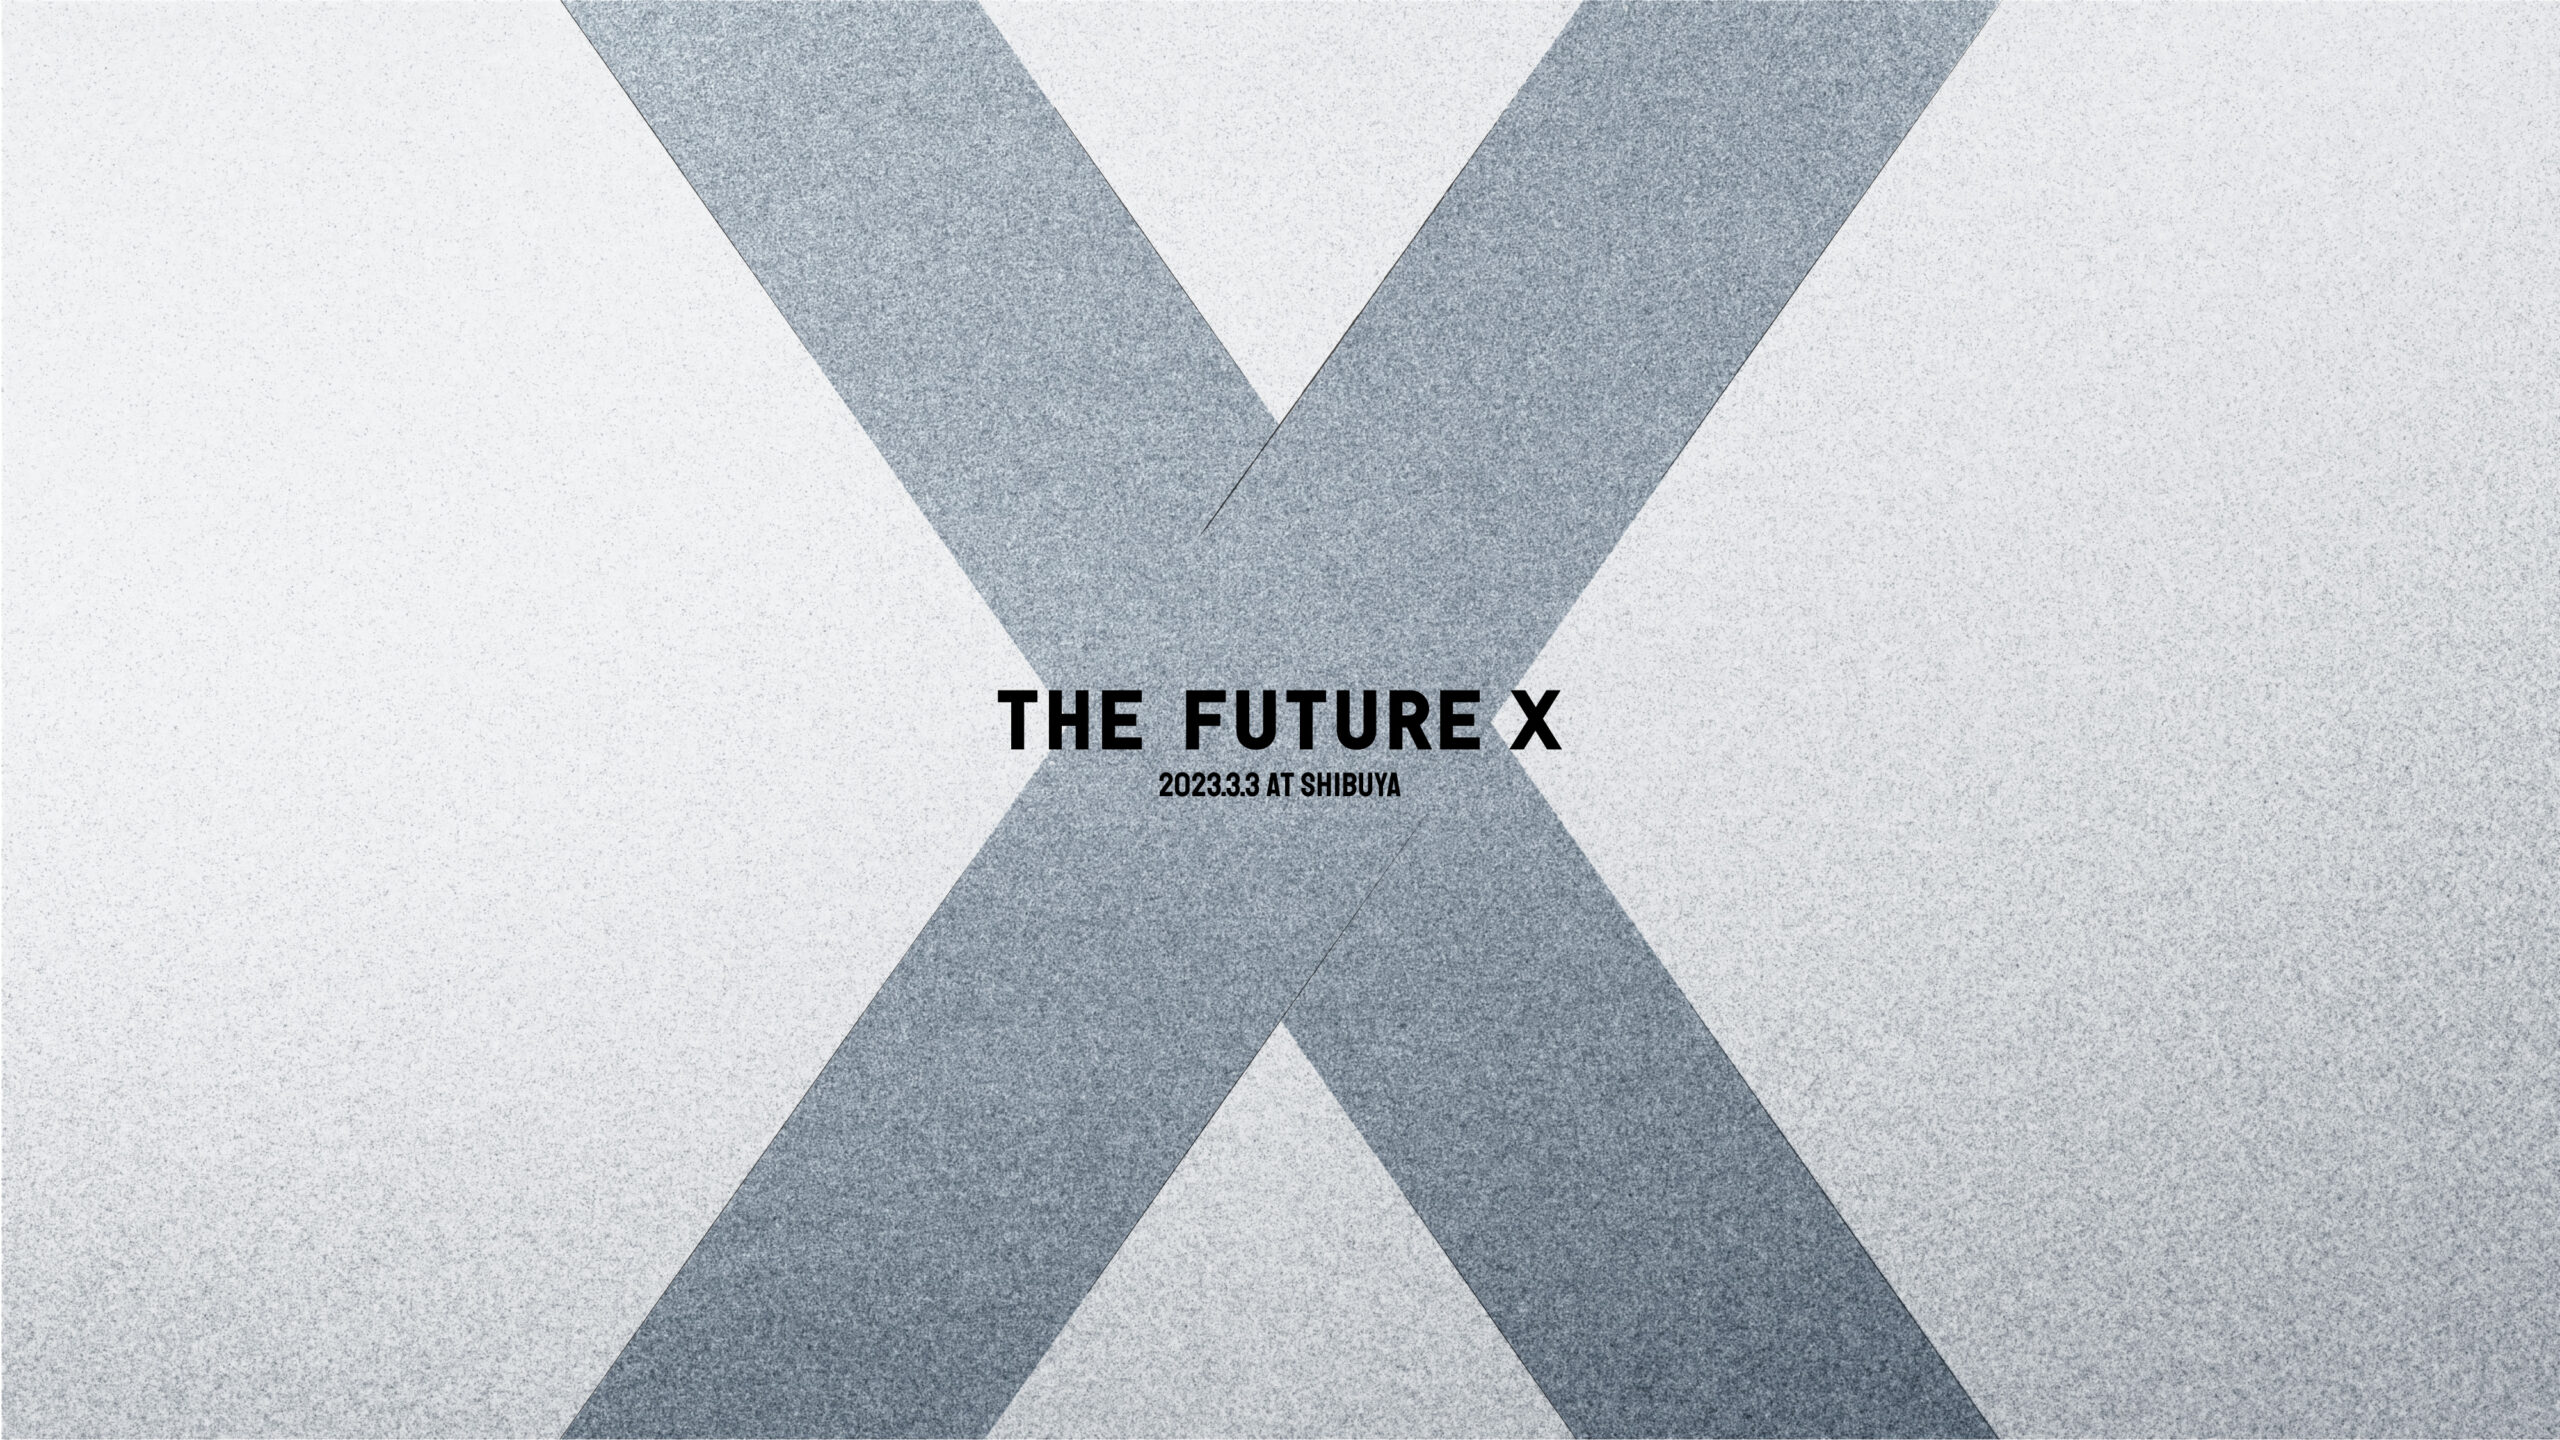 【3月3日(金)開催】ベンチャーキャピタルTHE SEED様が主催される「THE FUTURE X」にブースを出展いたします